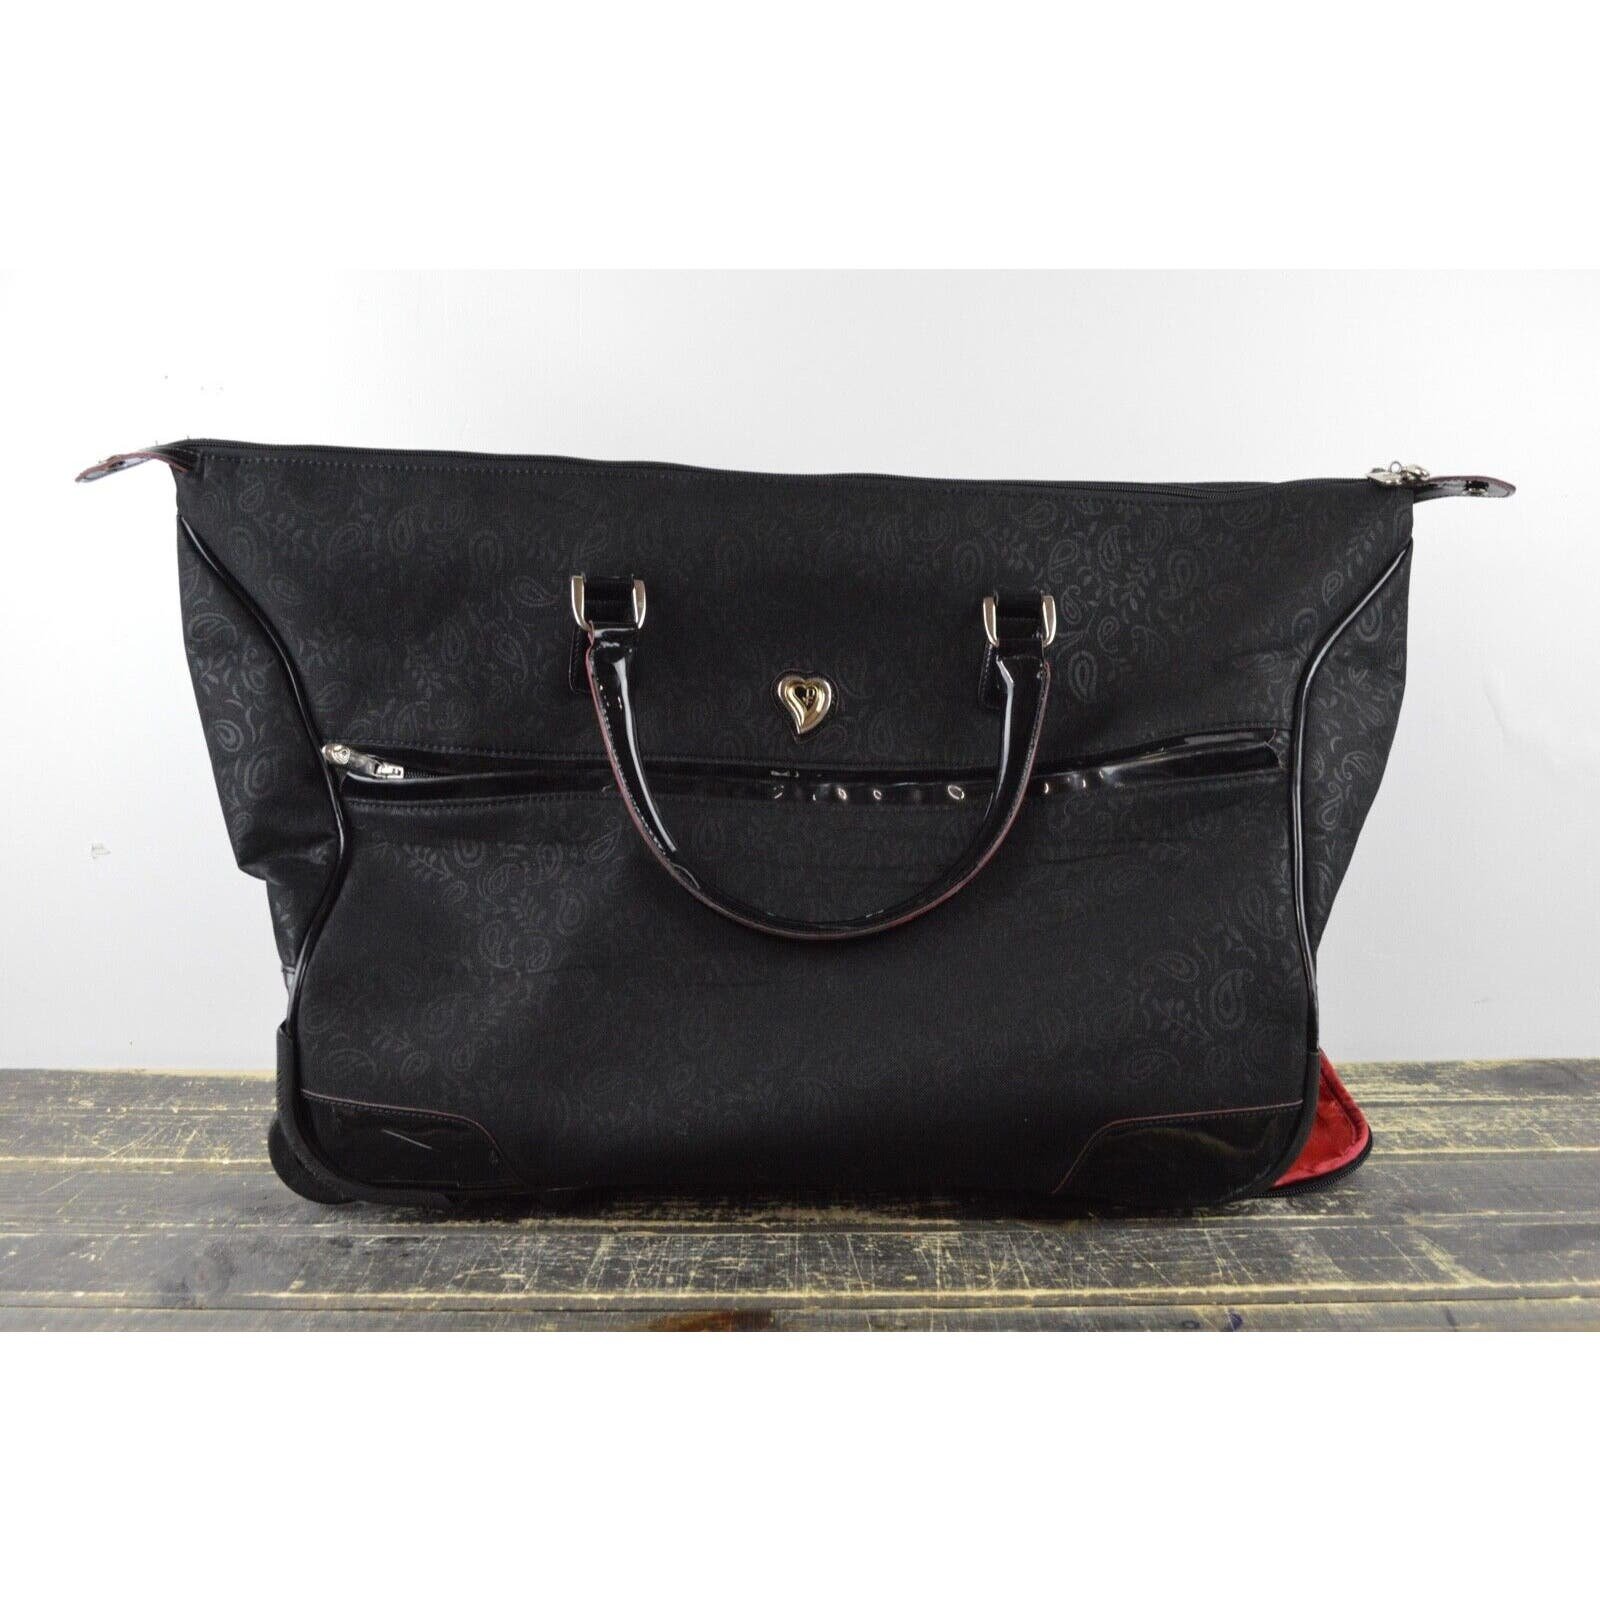 Diane Von Furstenberg Signature Tavel Duffle Wheeled Carry On Bag Luggage Black efMFPvslx